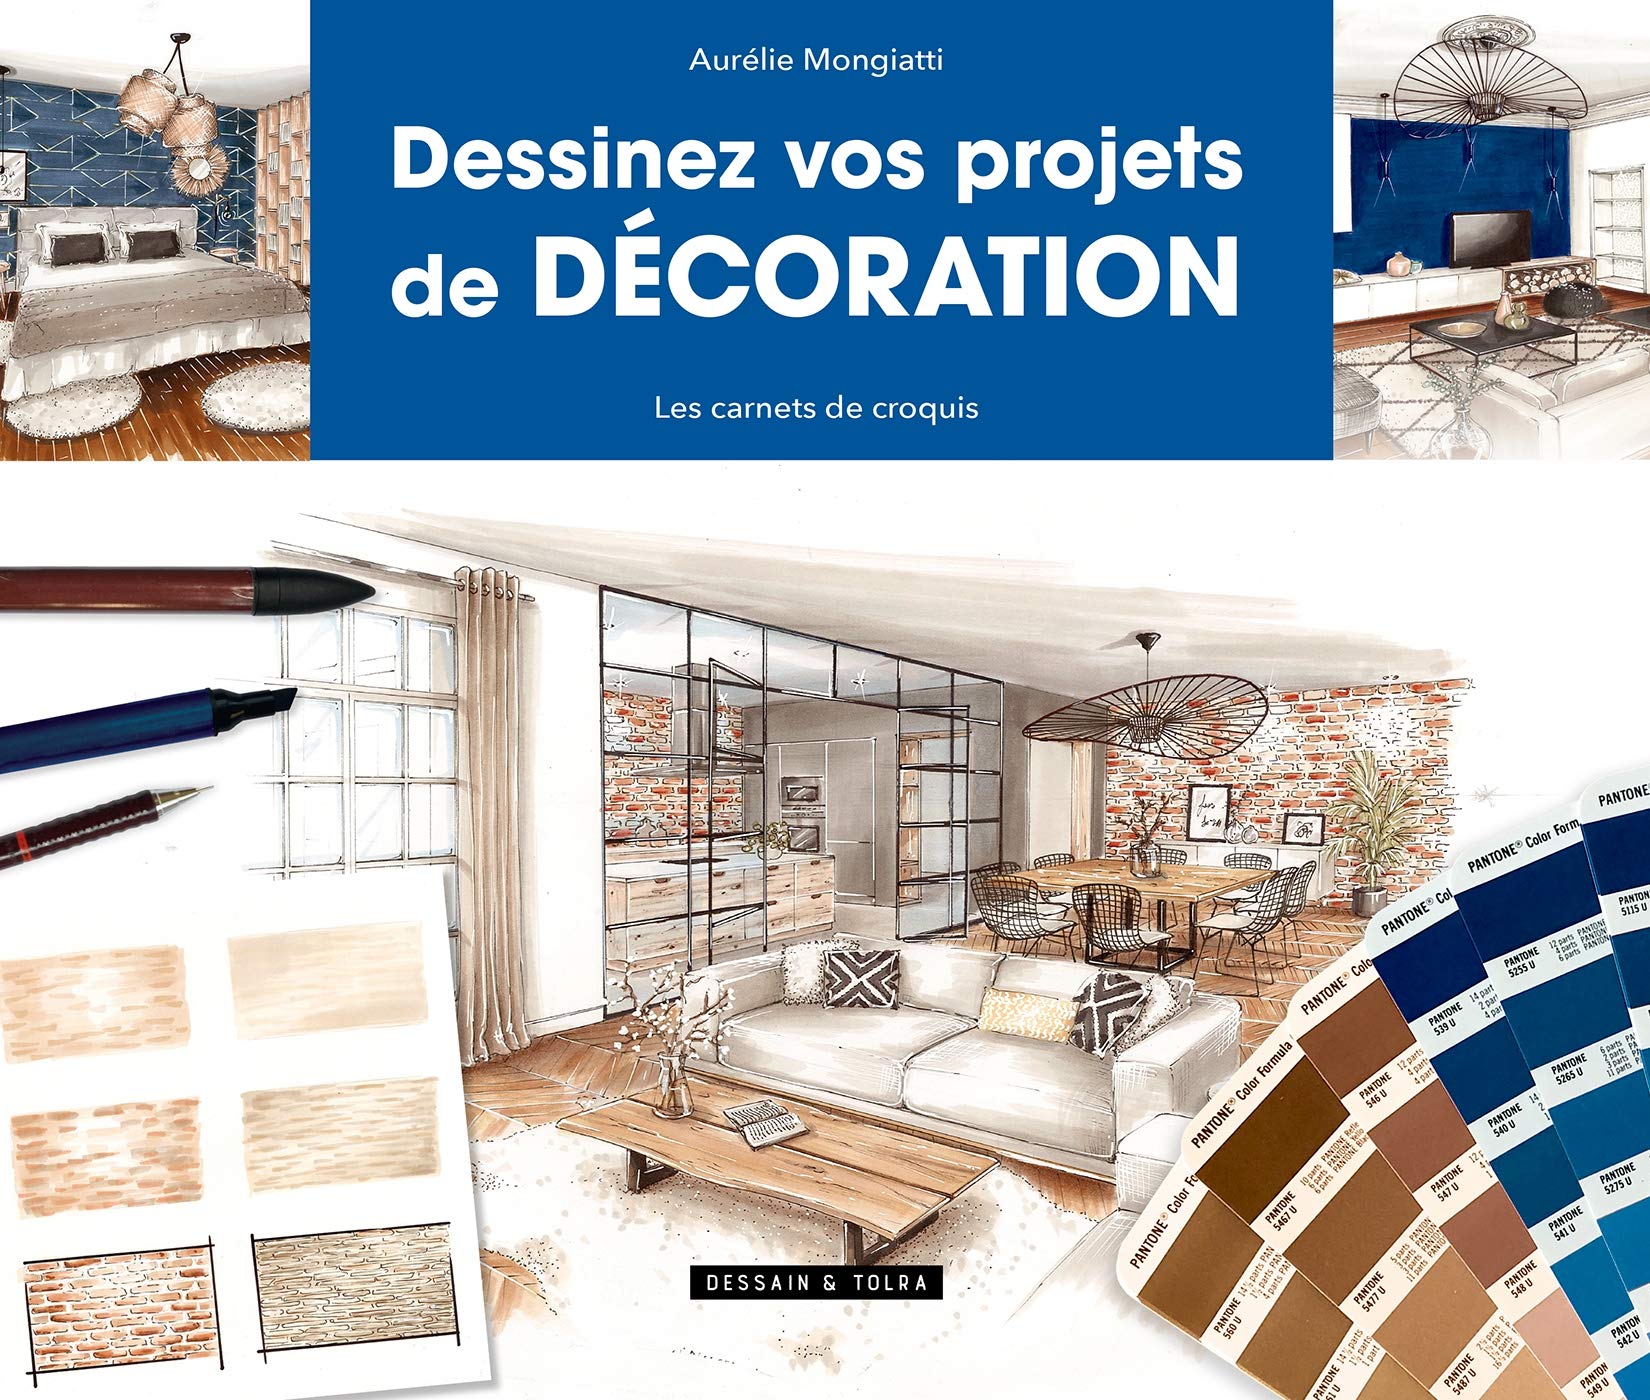 Architecte intérieur Poitiers Dessinez vos projets de décoration livre AM Esquisse Aurélie Mongiatti